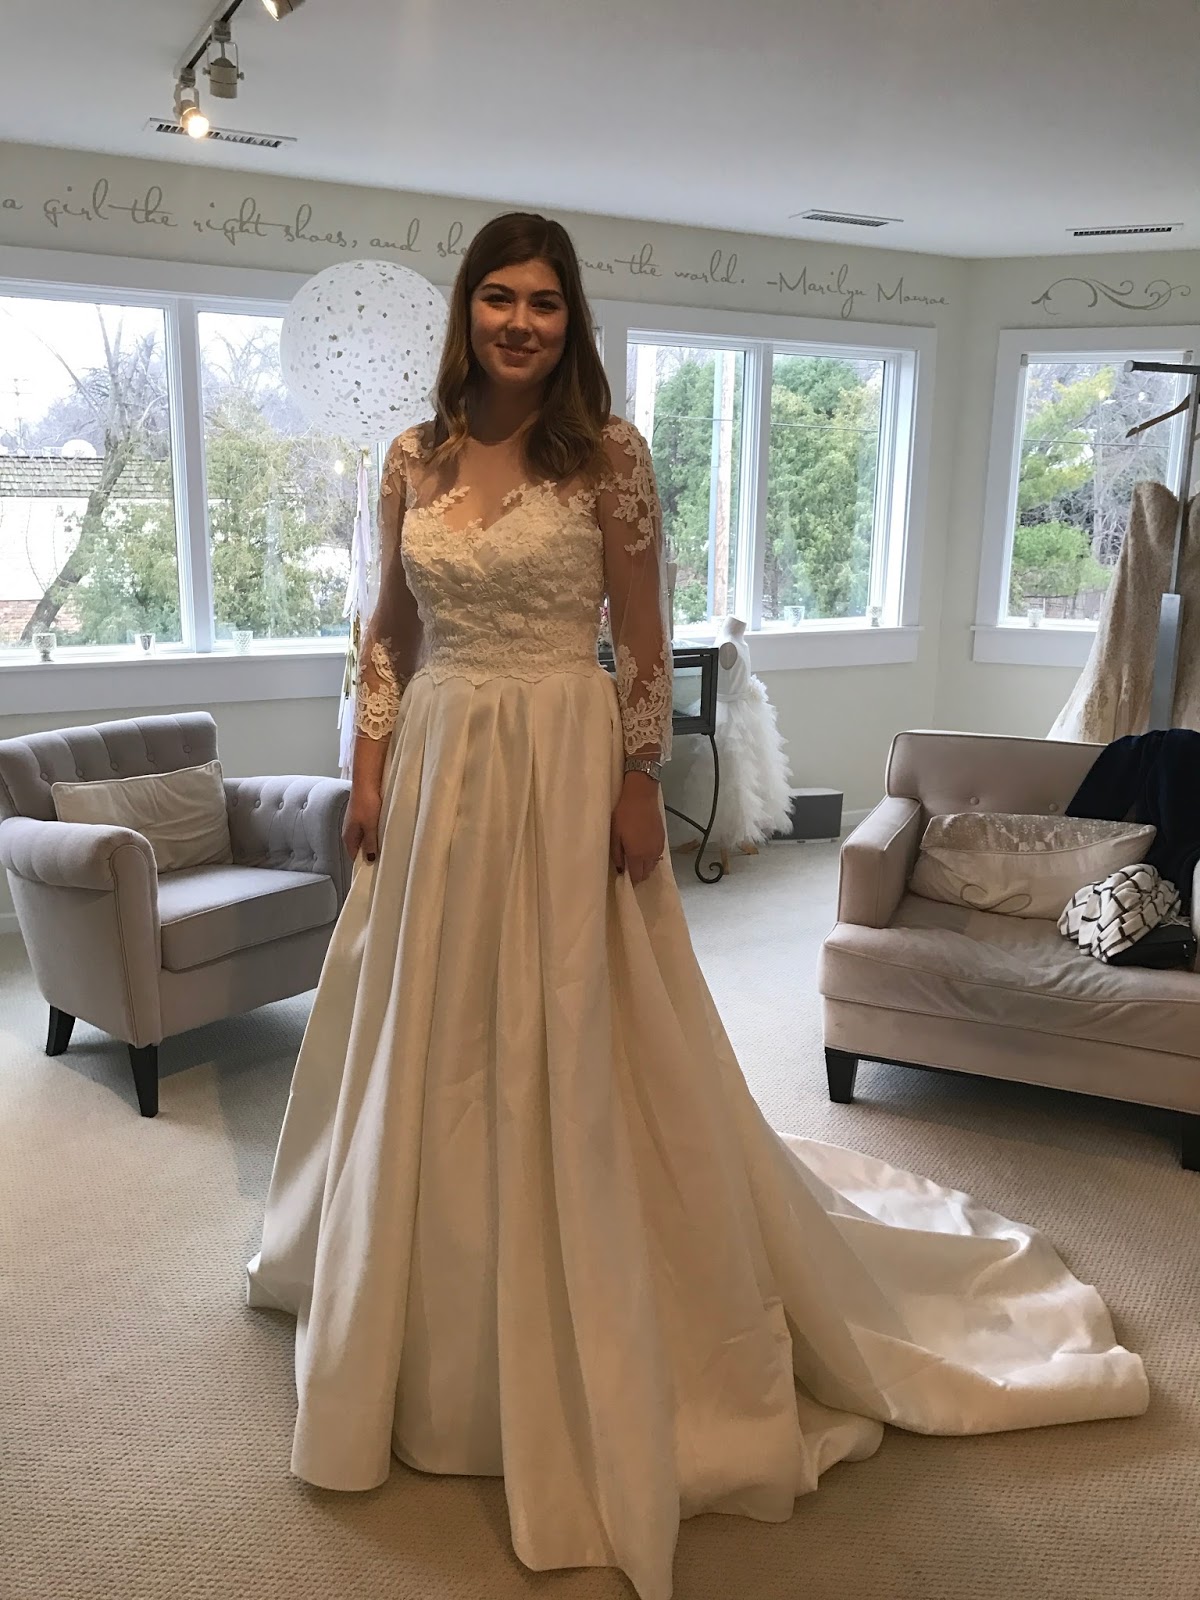 choosing-my-wedding-dress